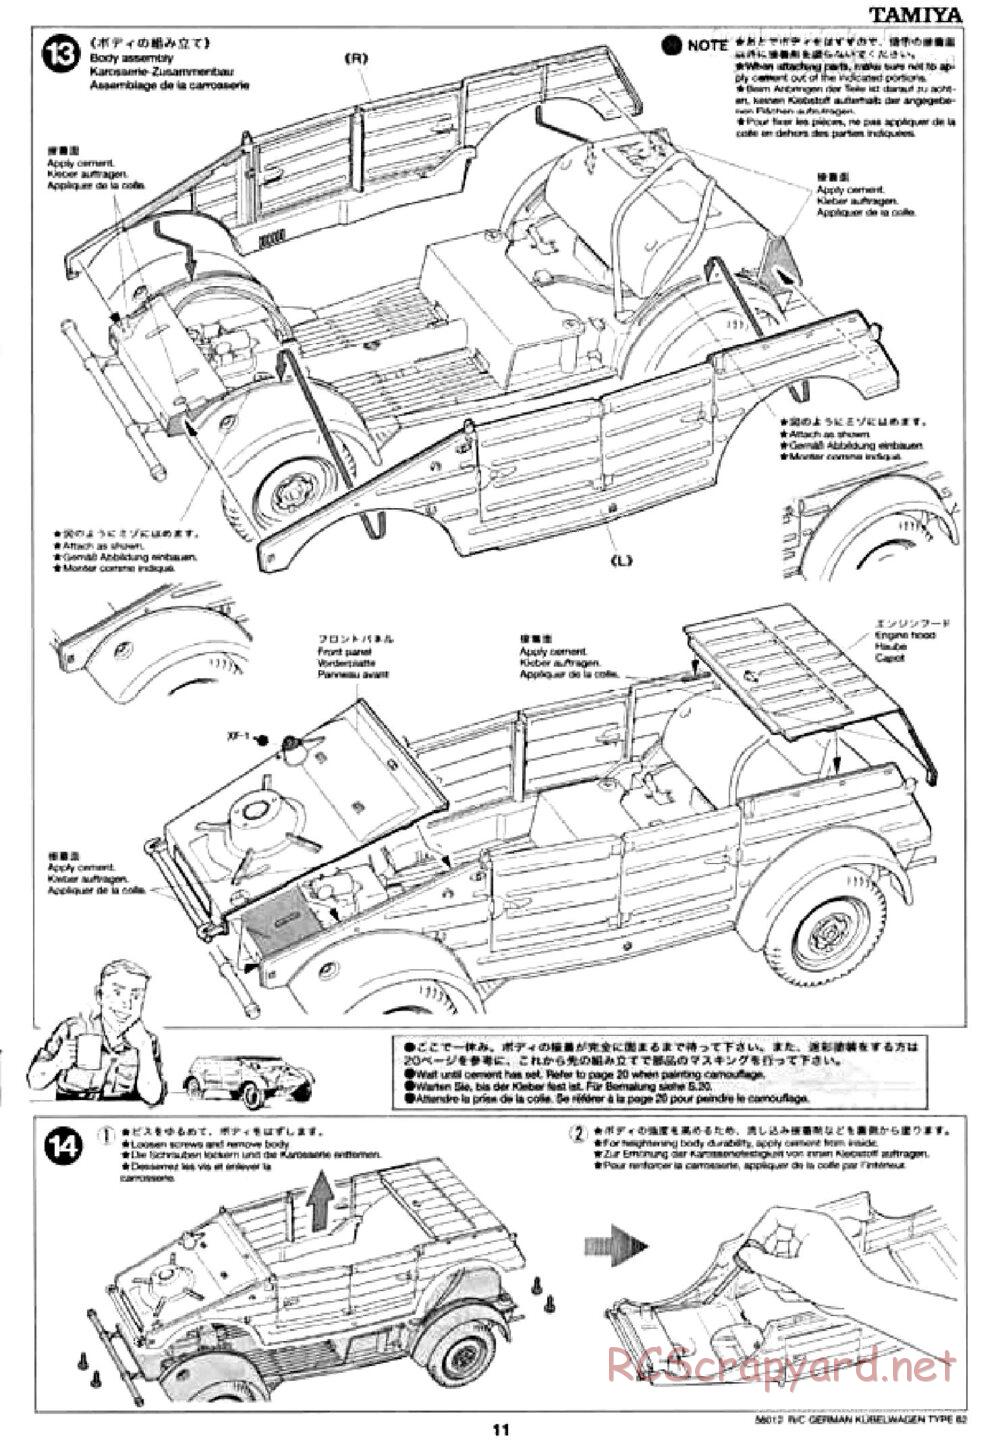 Tamiya - Kubelwagen Type 82 Chassis - Manual - Page 11